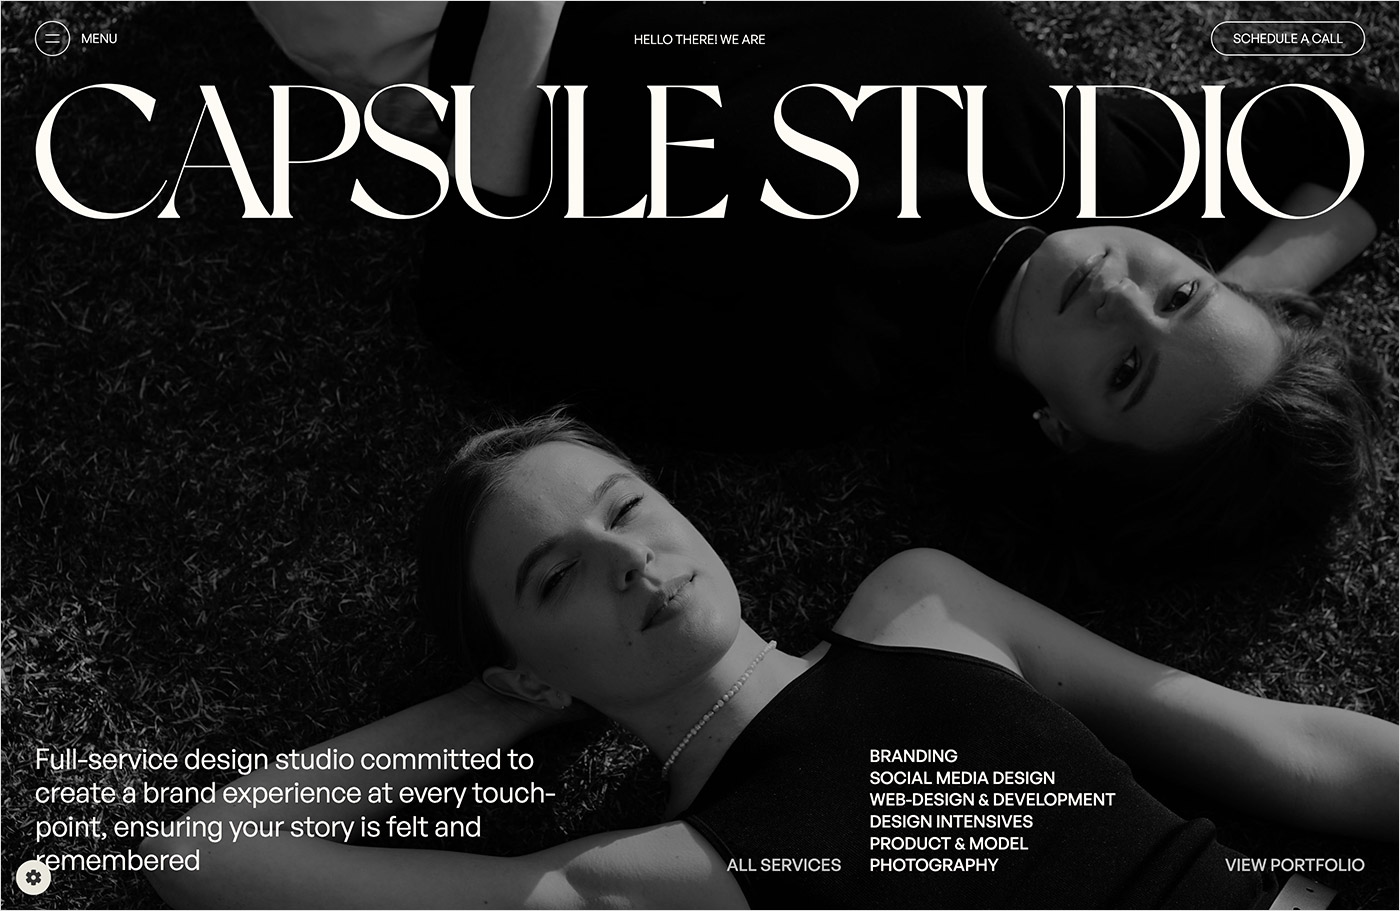 Capsule Design Studioウェブサイトの画面キャプチャ画像